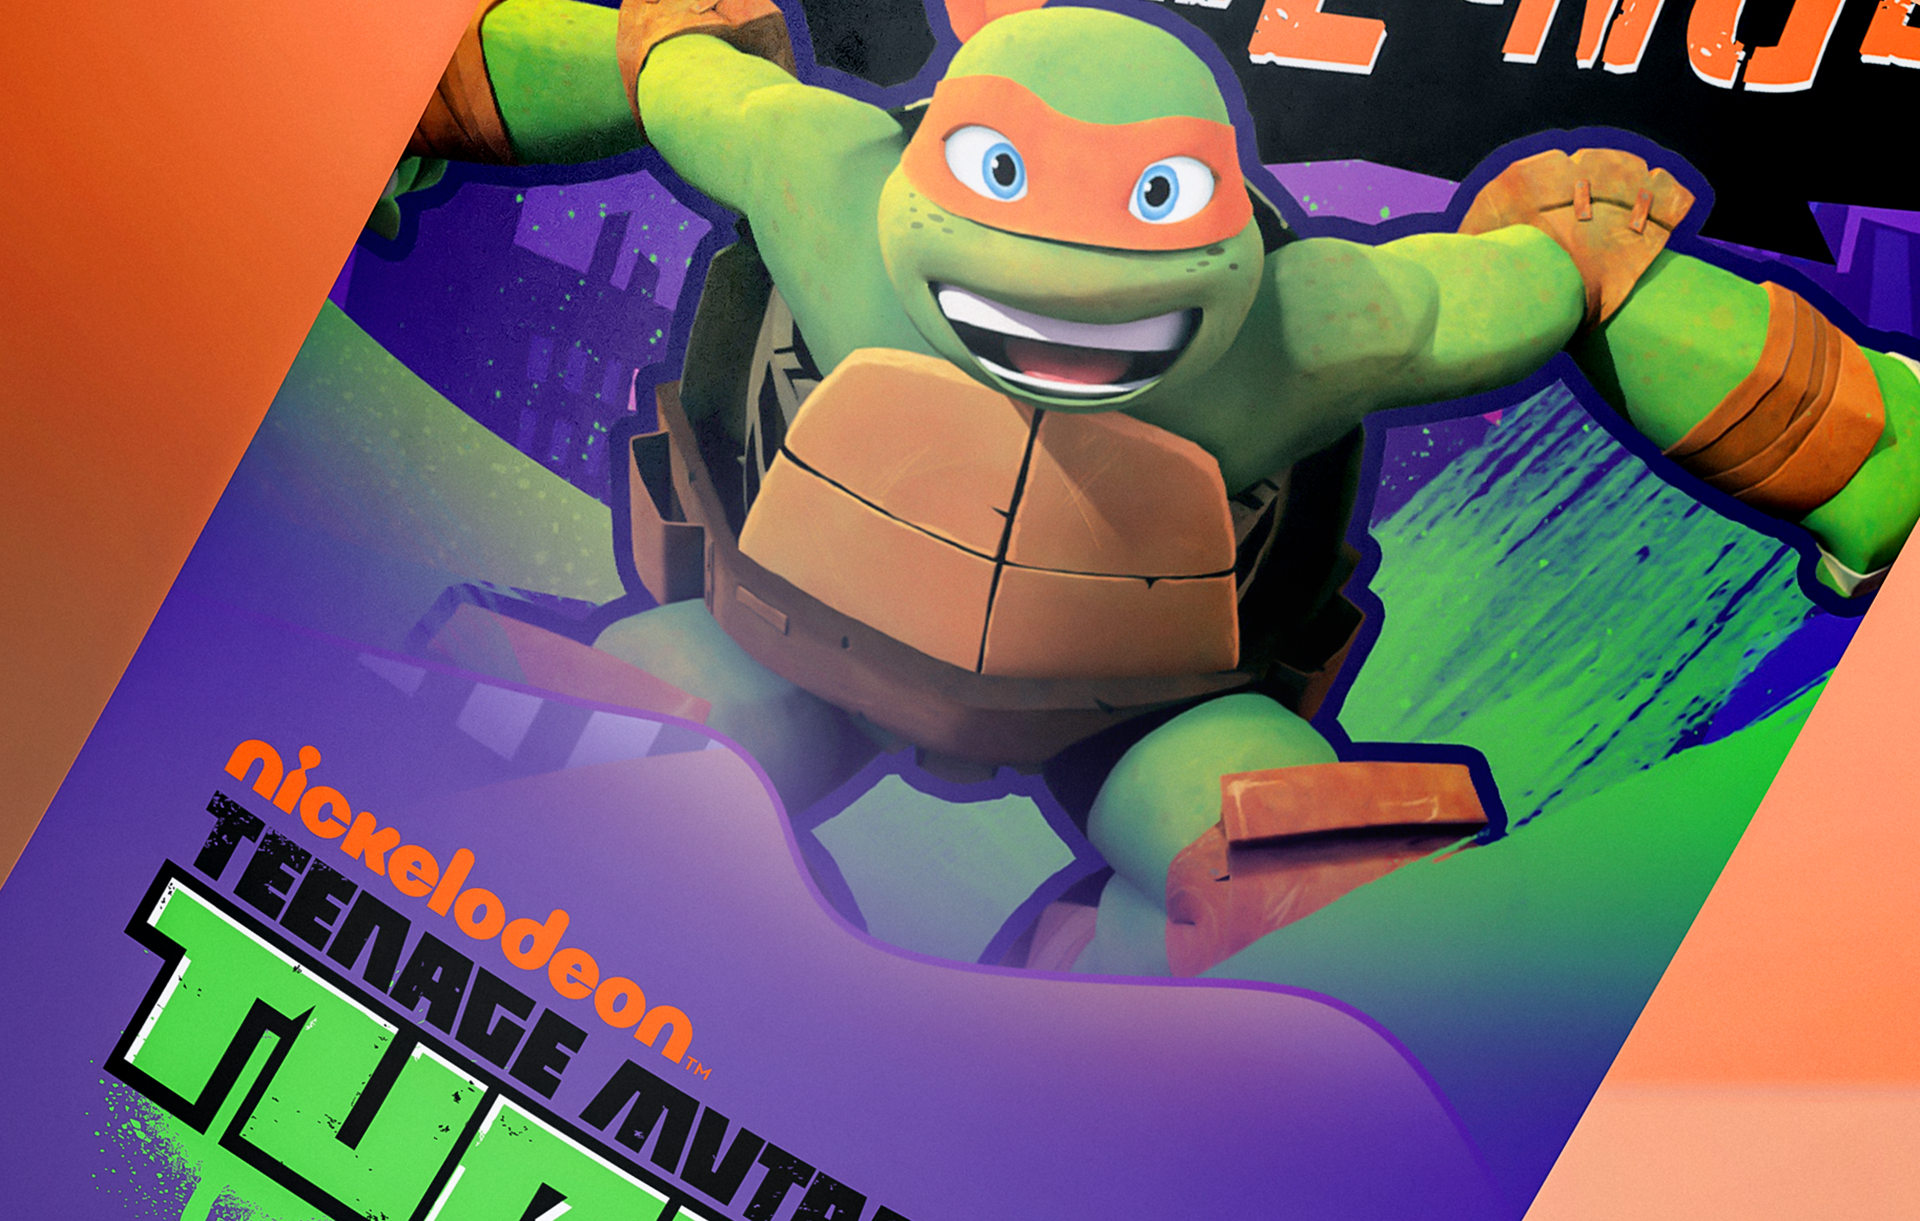 Nickelodeon Teenage Mutant Ninja Turtles Poster Design Scott Luscombe Creatibly